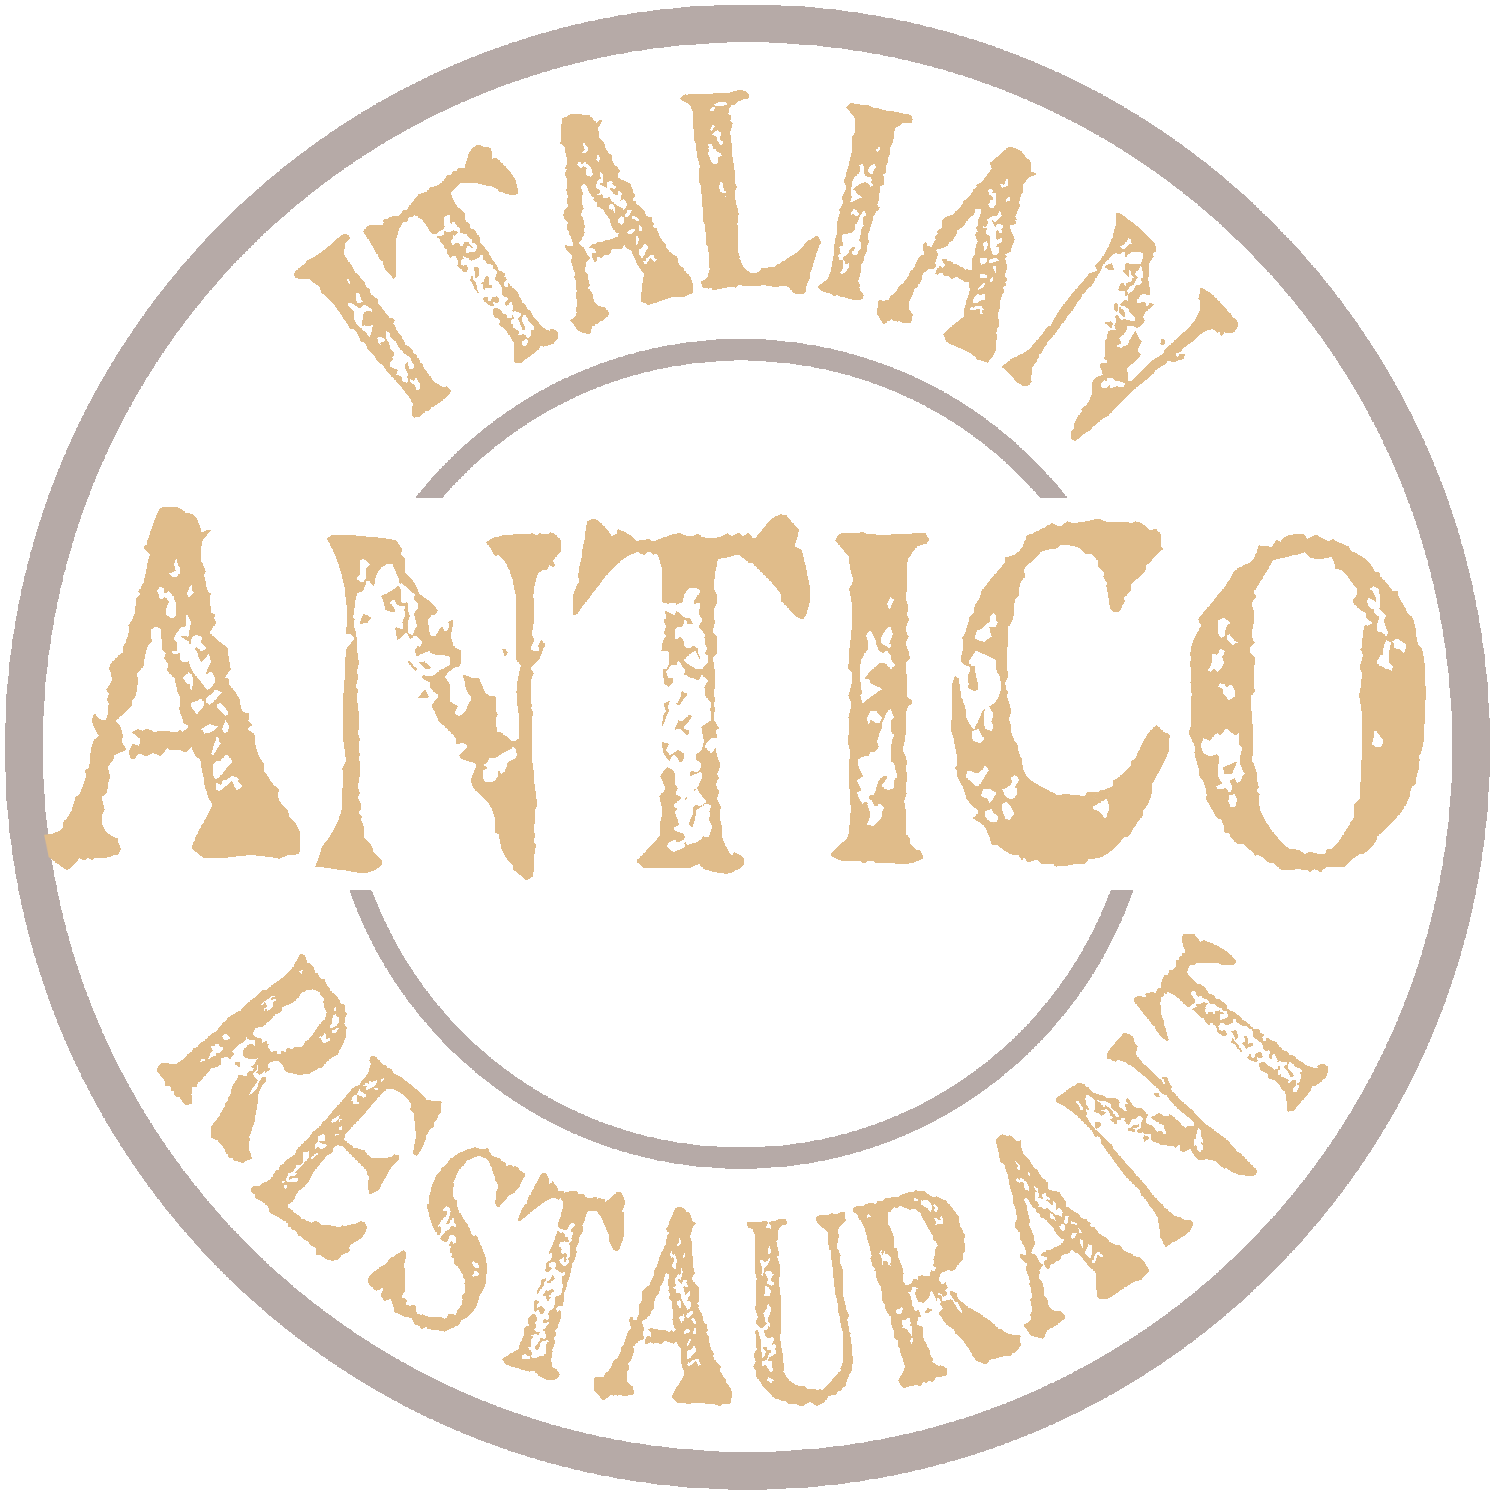 Antico Italian Restaurant